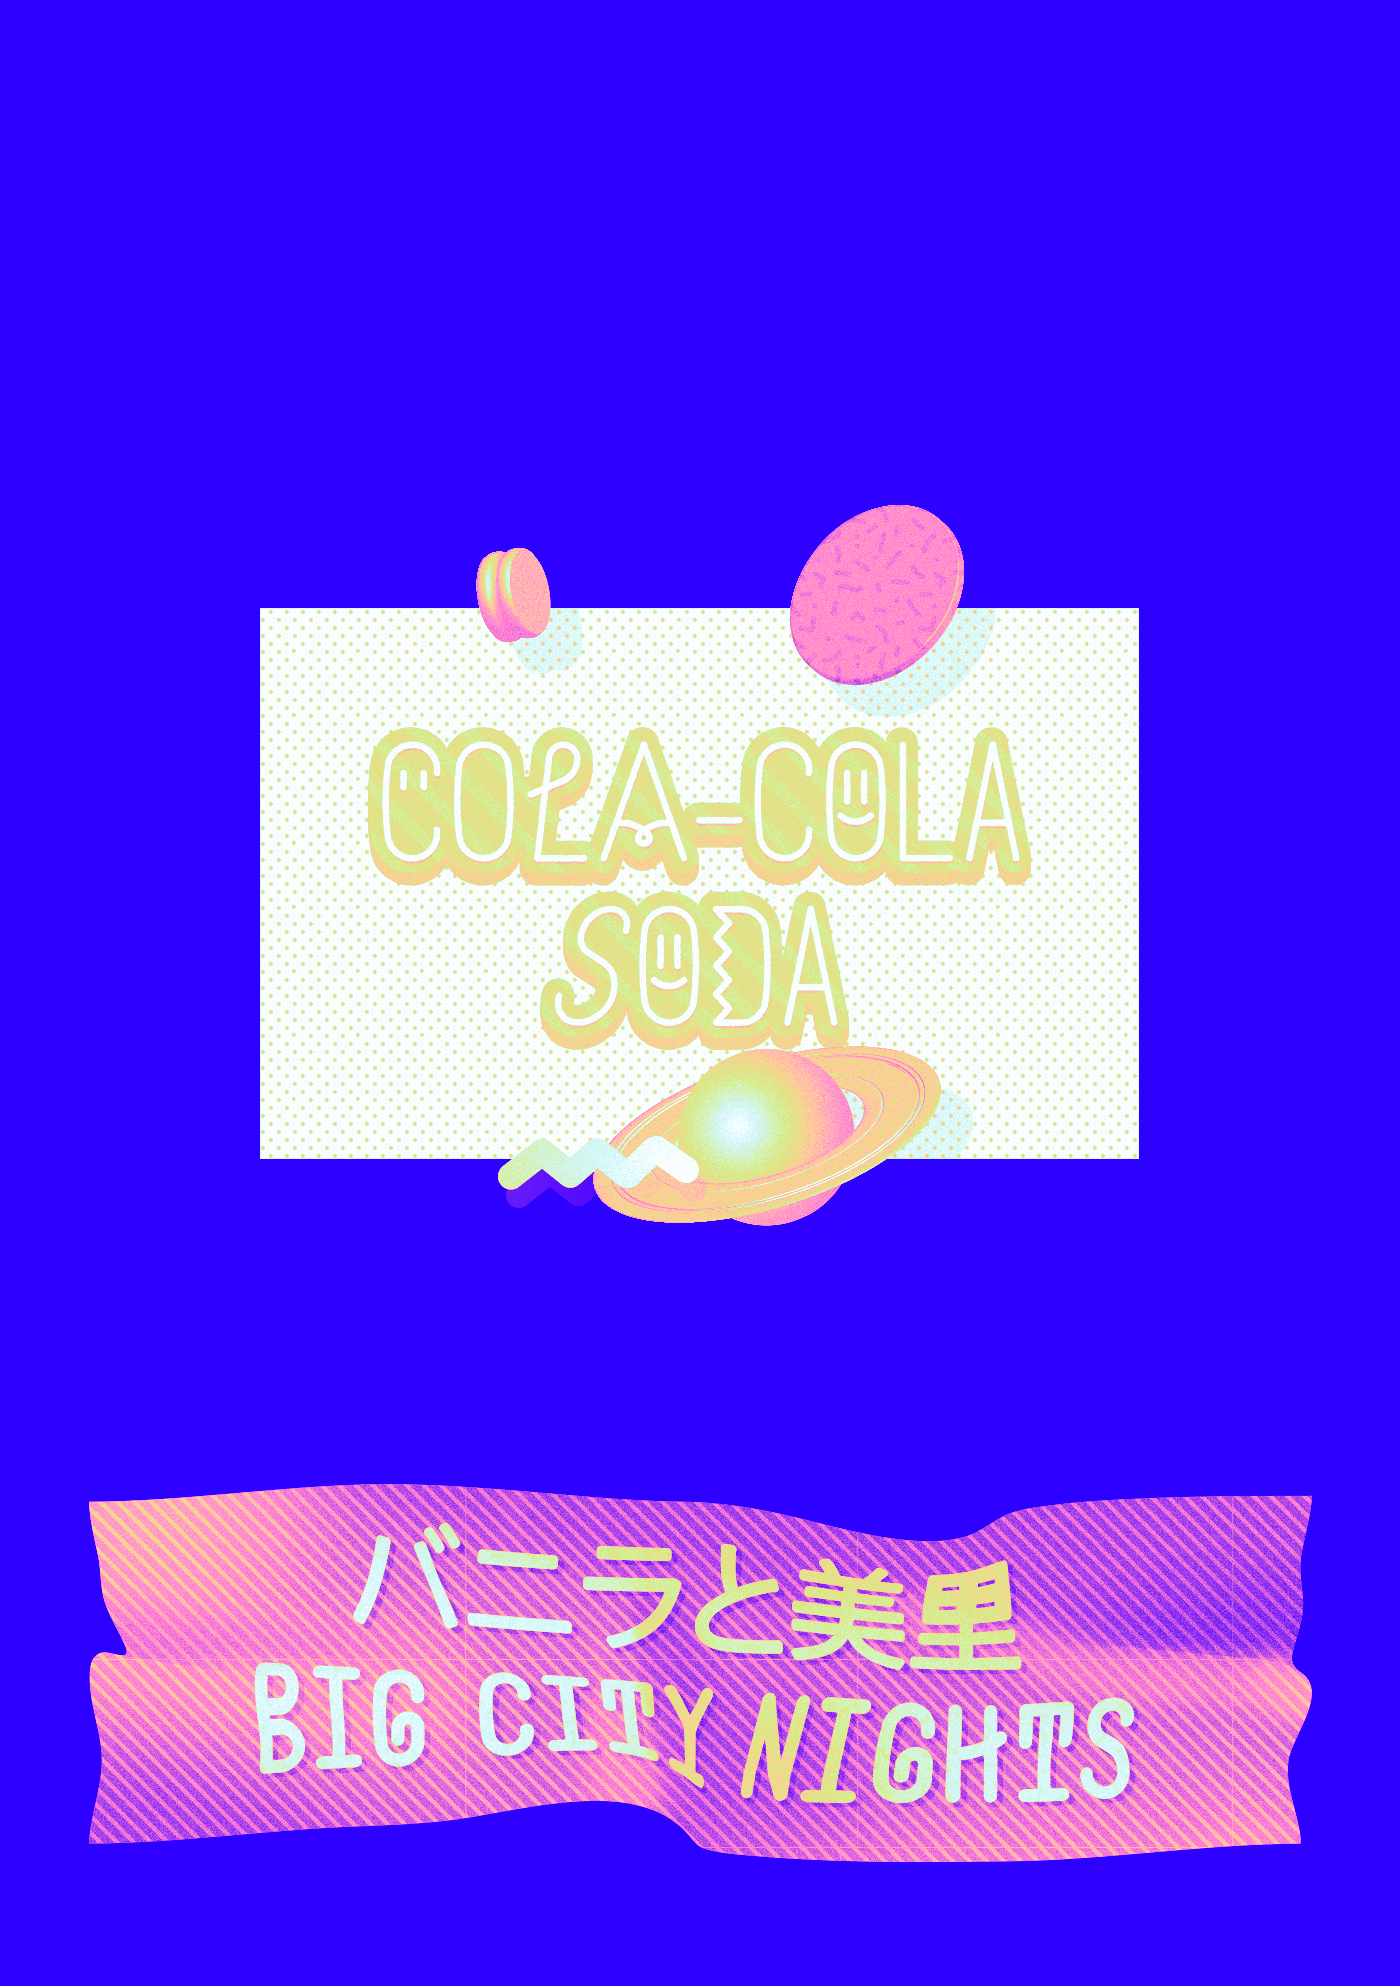 Beispiel einer Soda Pop-Schriftart